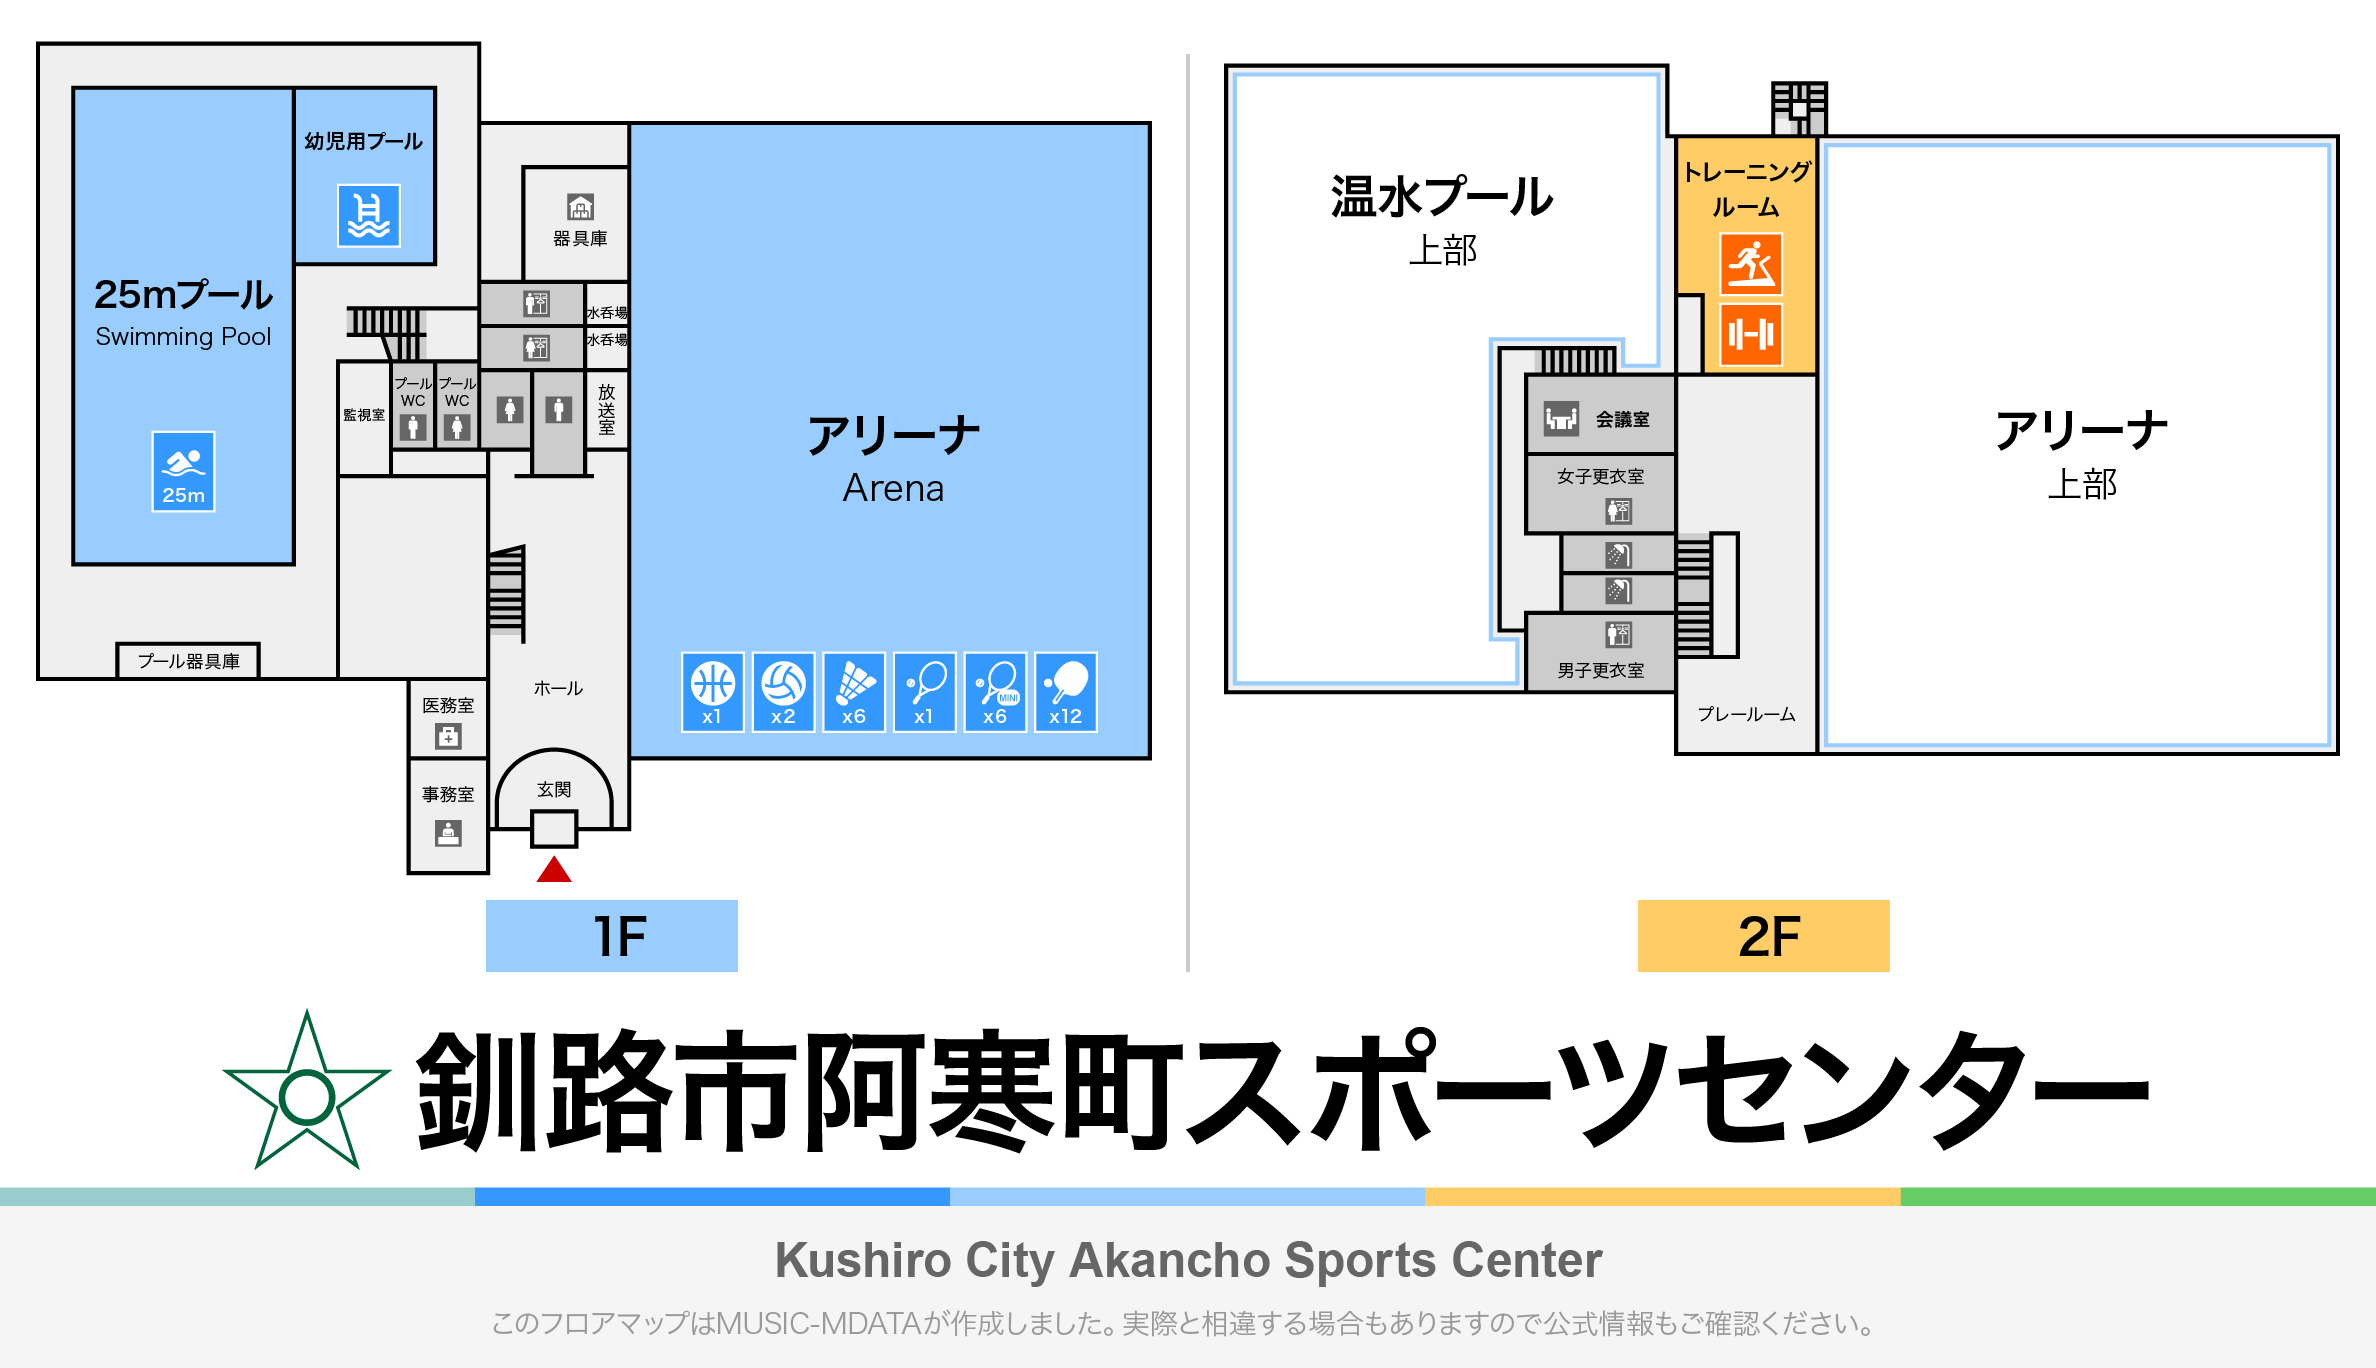 釧路市阿寒町スポーツセンターのフロアマップ・体育館